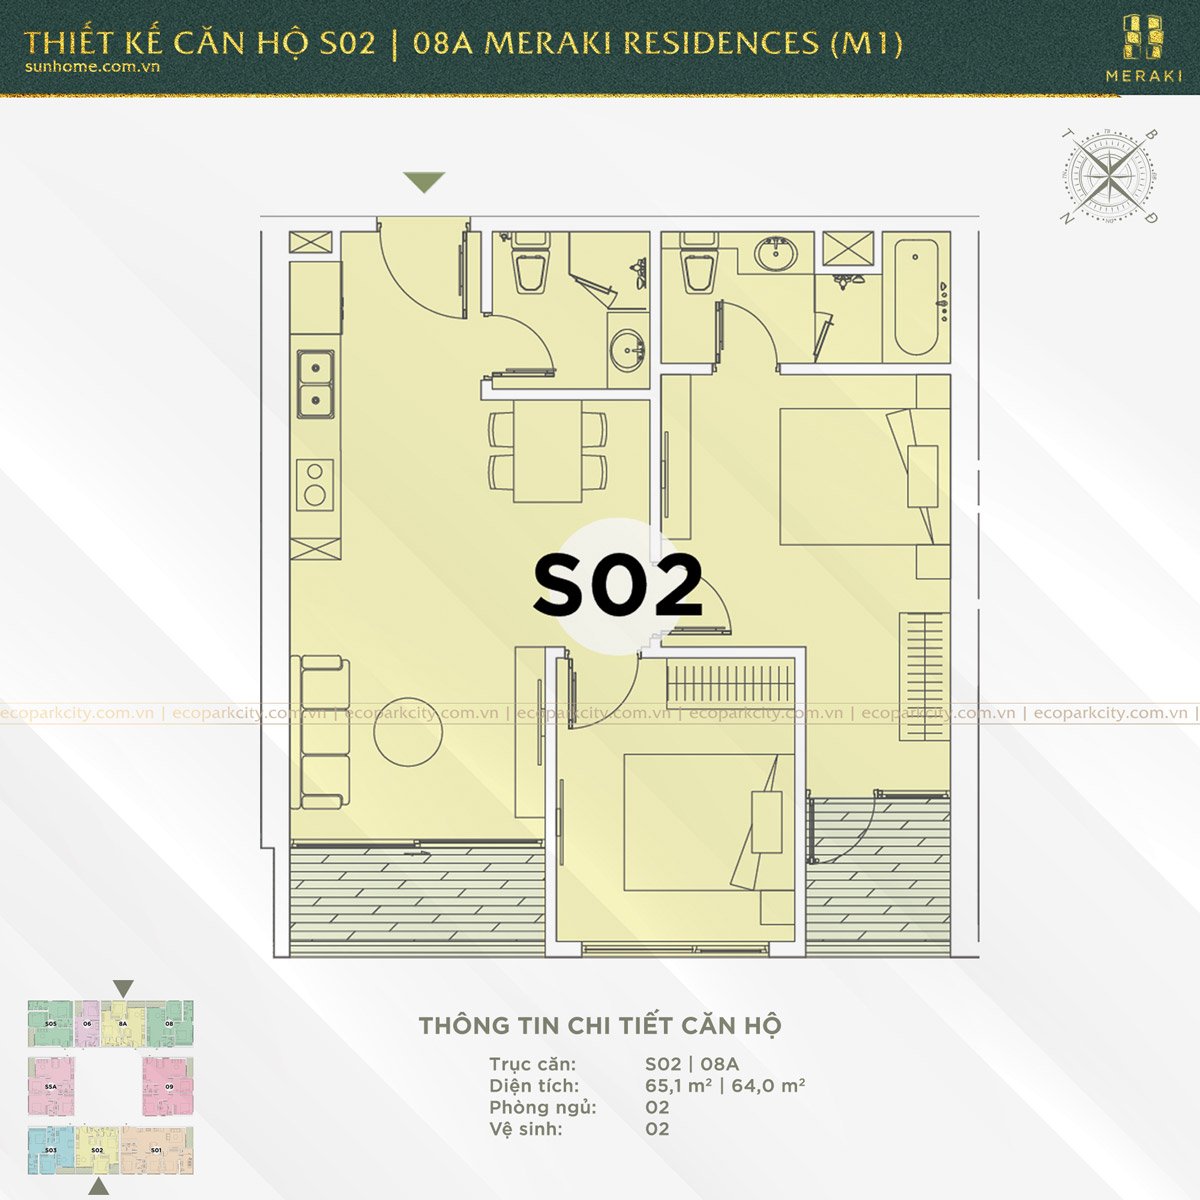 Thiết kế căn hộ S02 và 08A Meraki Residences (M1)